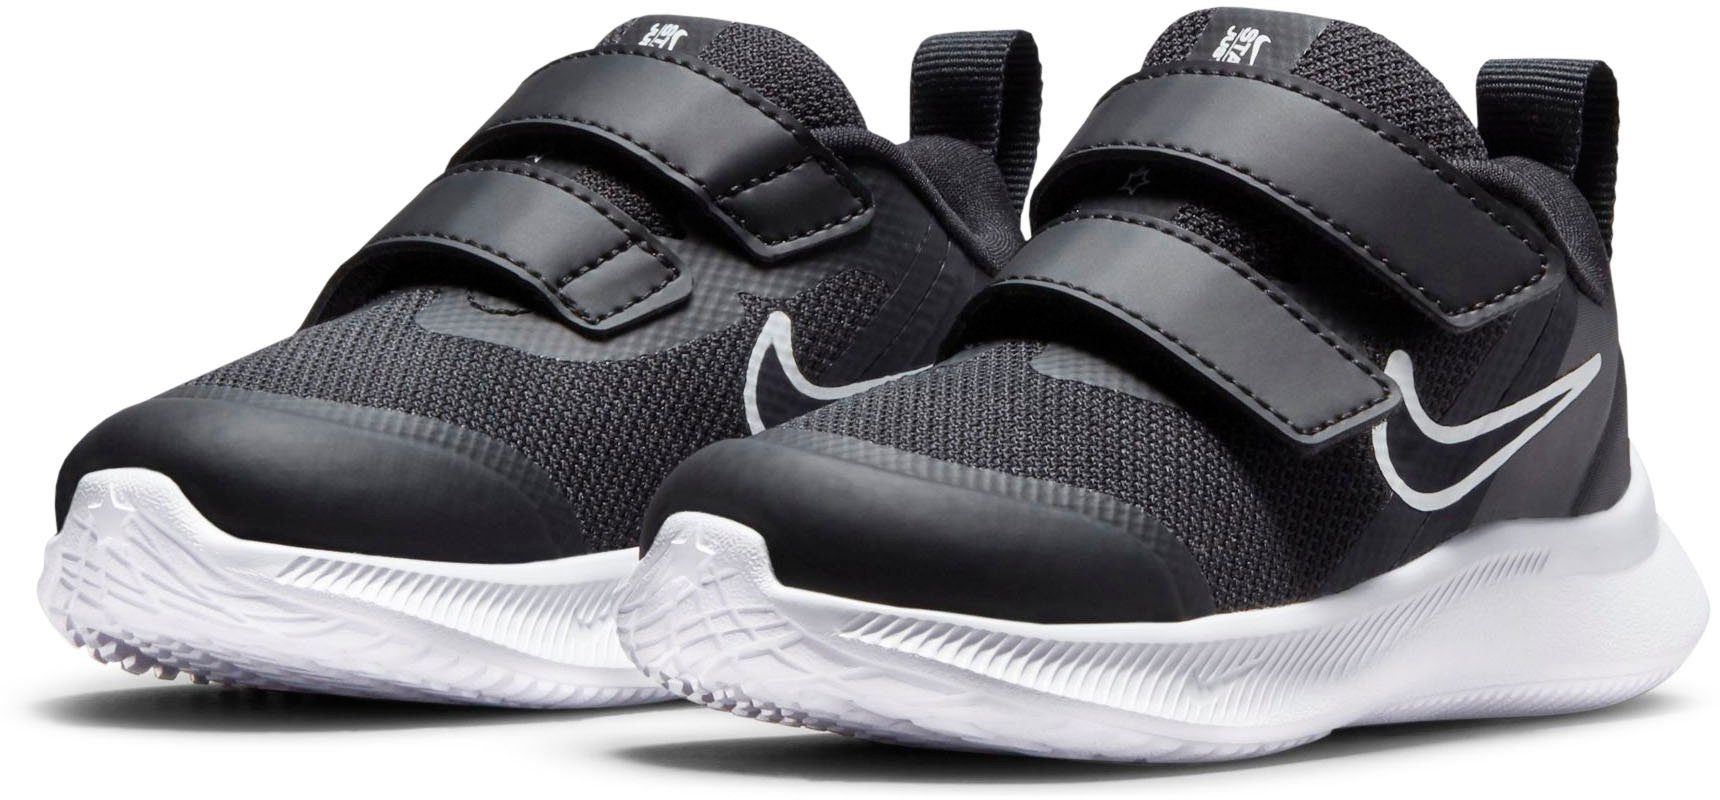 Neuestes Design Nike STAR 3 mit schwarz-grau (TD) RUNNER Laufschuh Klettverschluss